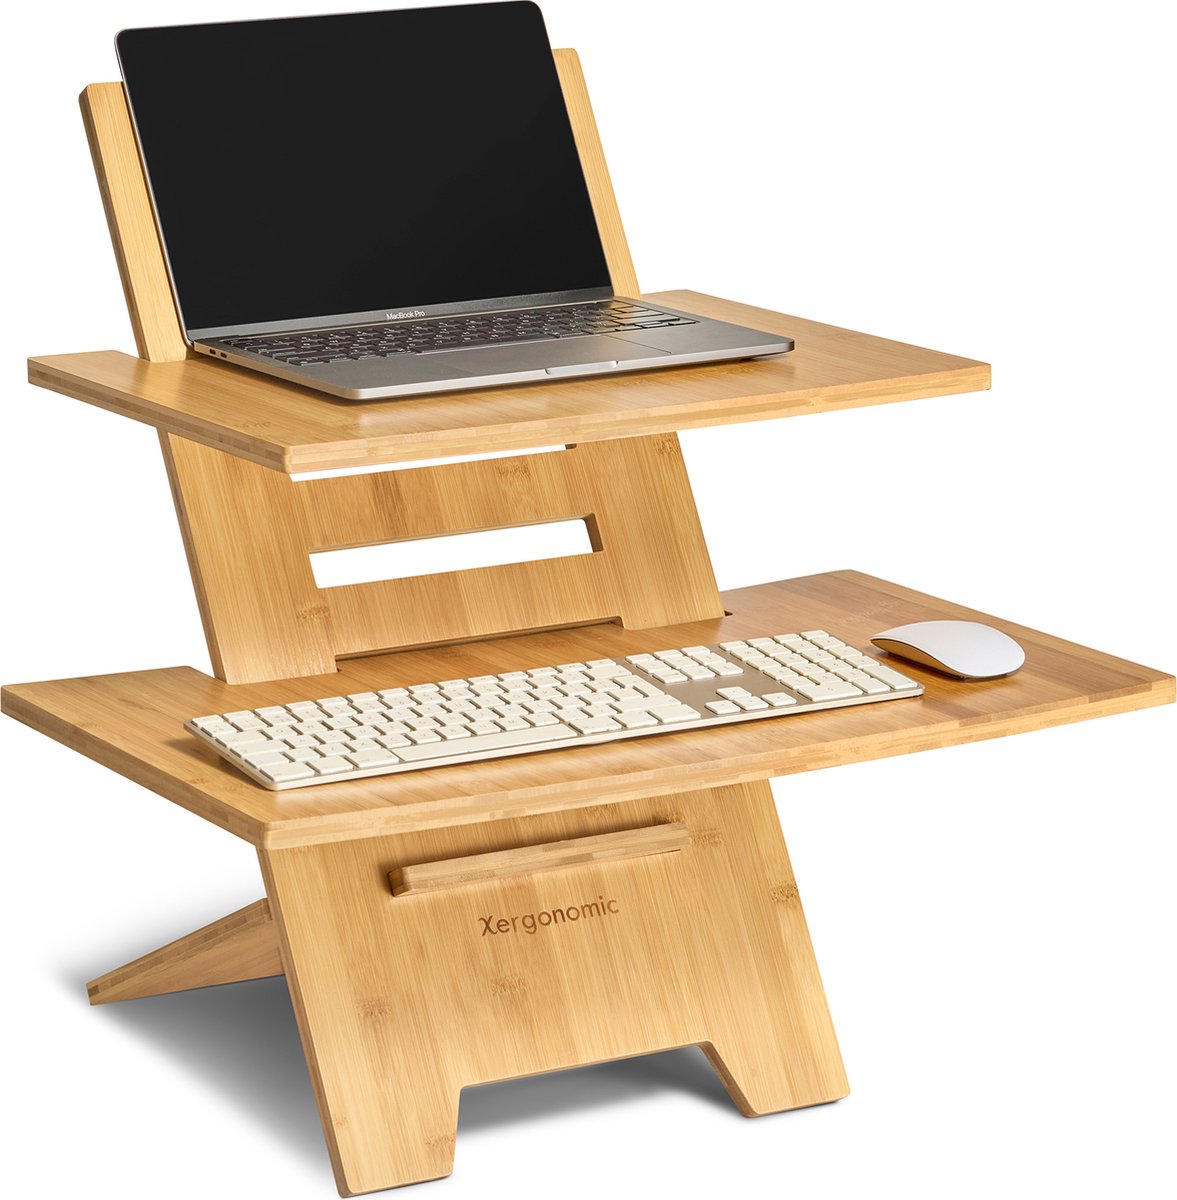 Duurzaam sta bureau – Laptopstandaard en Toetsenbordstandaard – Zit sta bureau in hoogte verstelbaar - Duurzaam bamboe - Ergonomisch werken - Xergonomic®